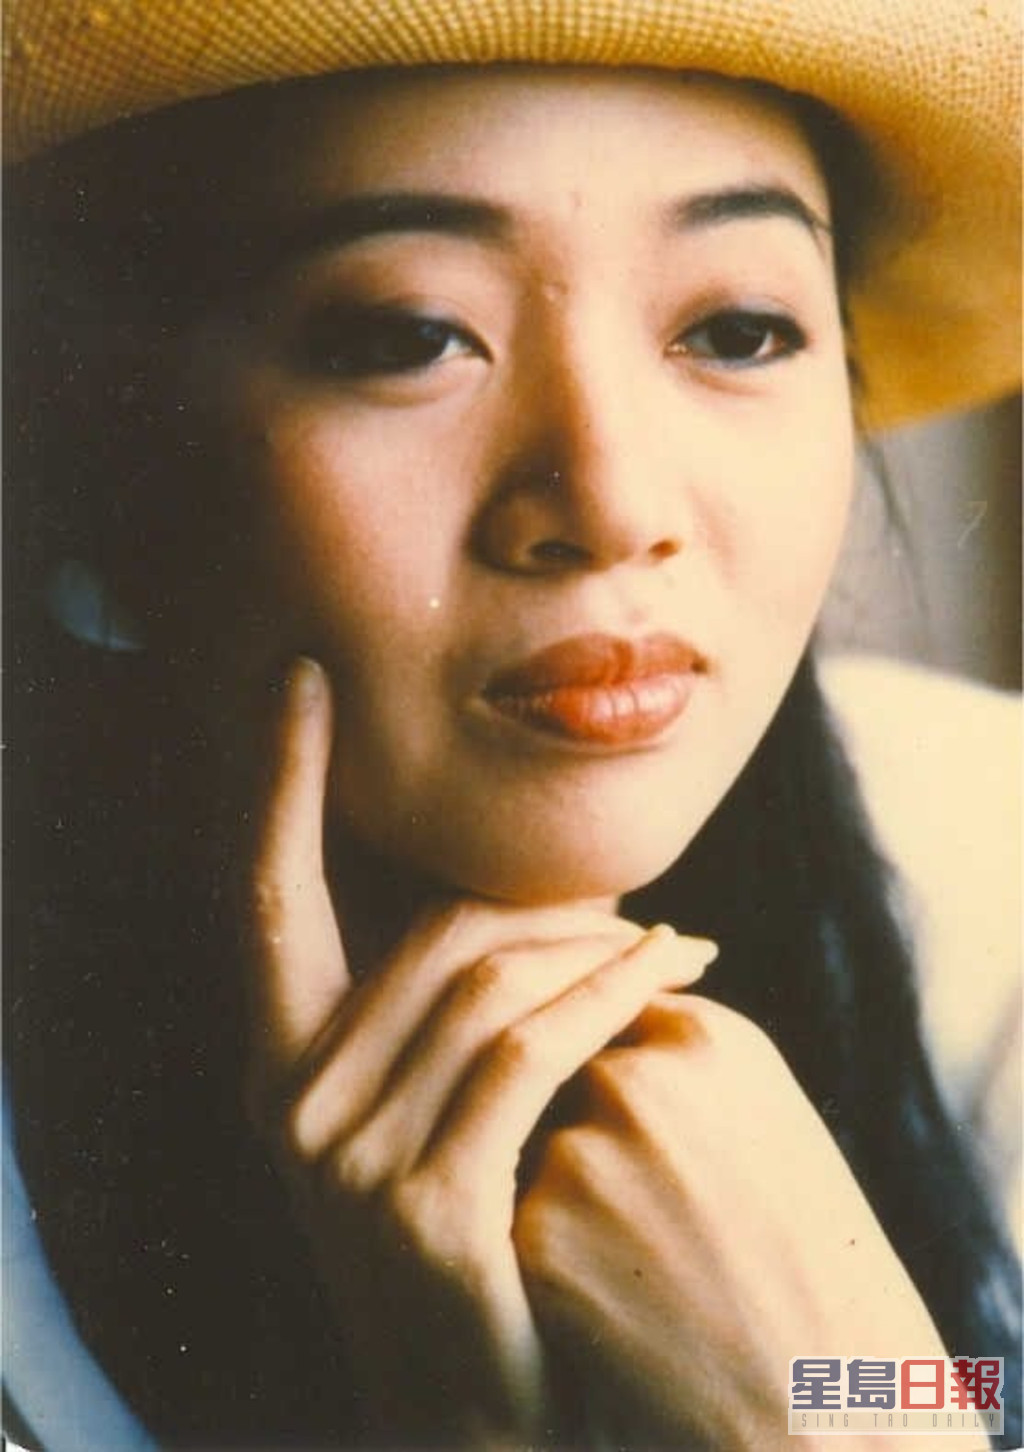 梅艷芳於2003年因子宮頸癌併發肺衰竭病逝，終年40歲。  ​